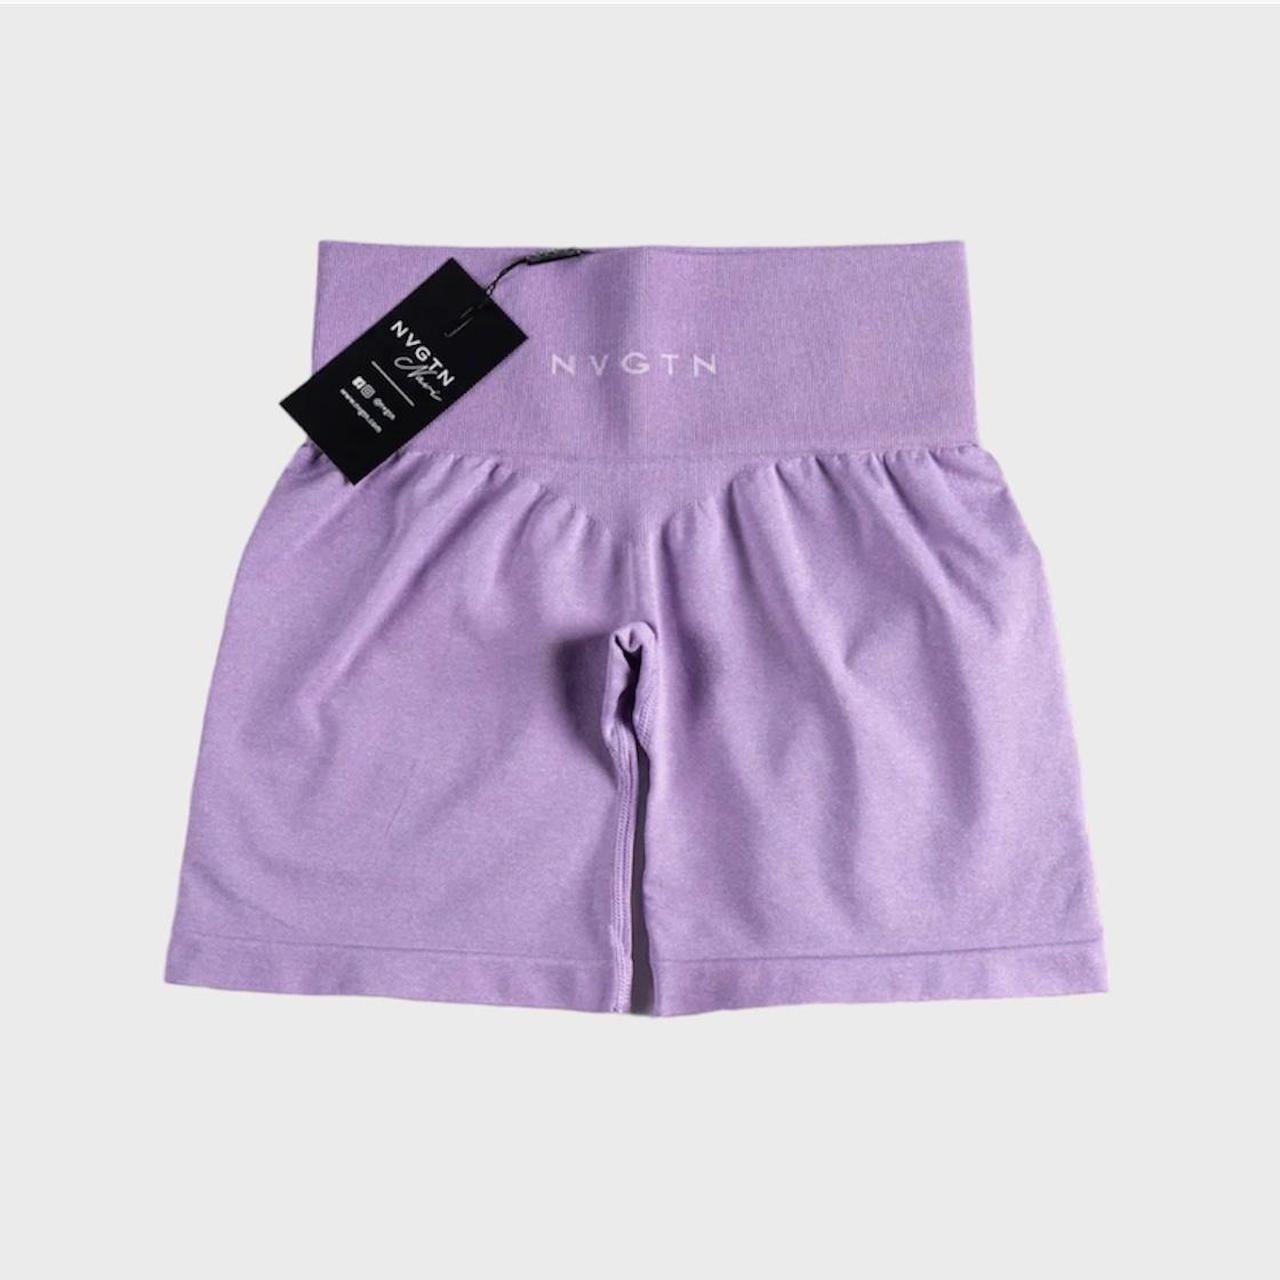 Alphalete Women's Purple Shorts